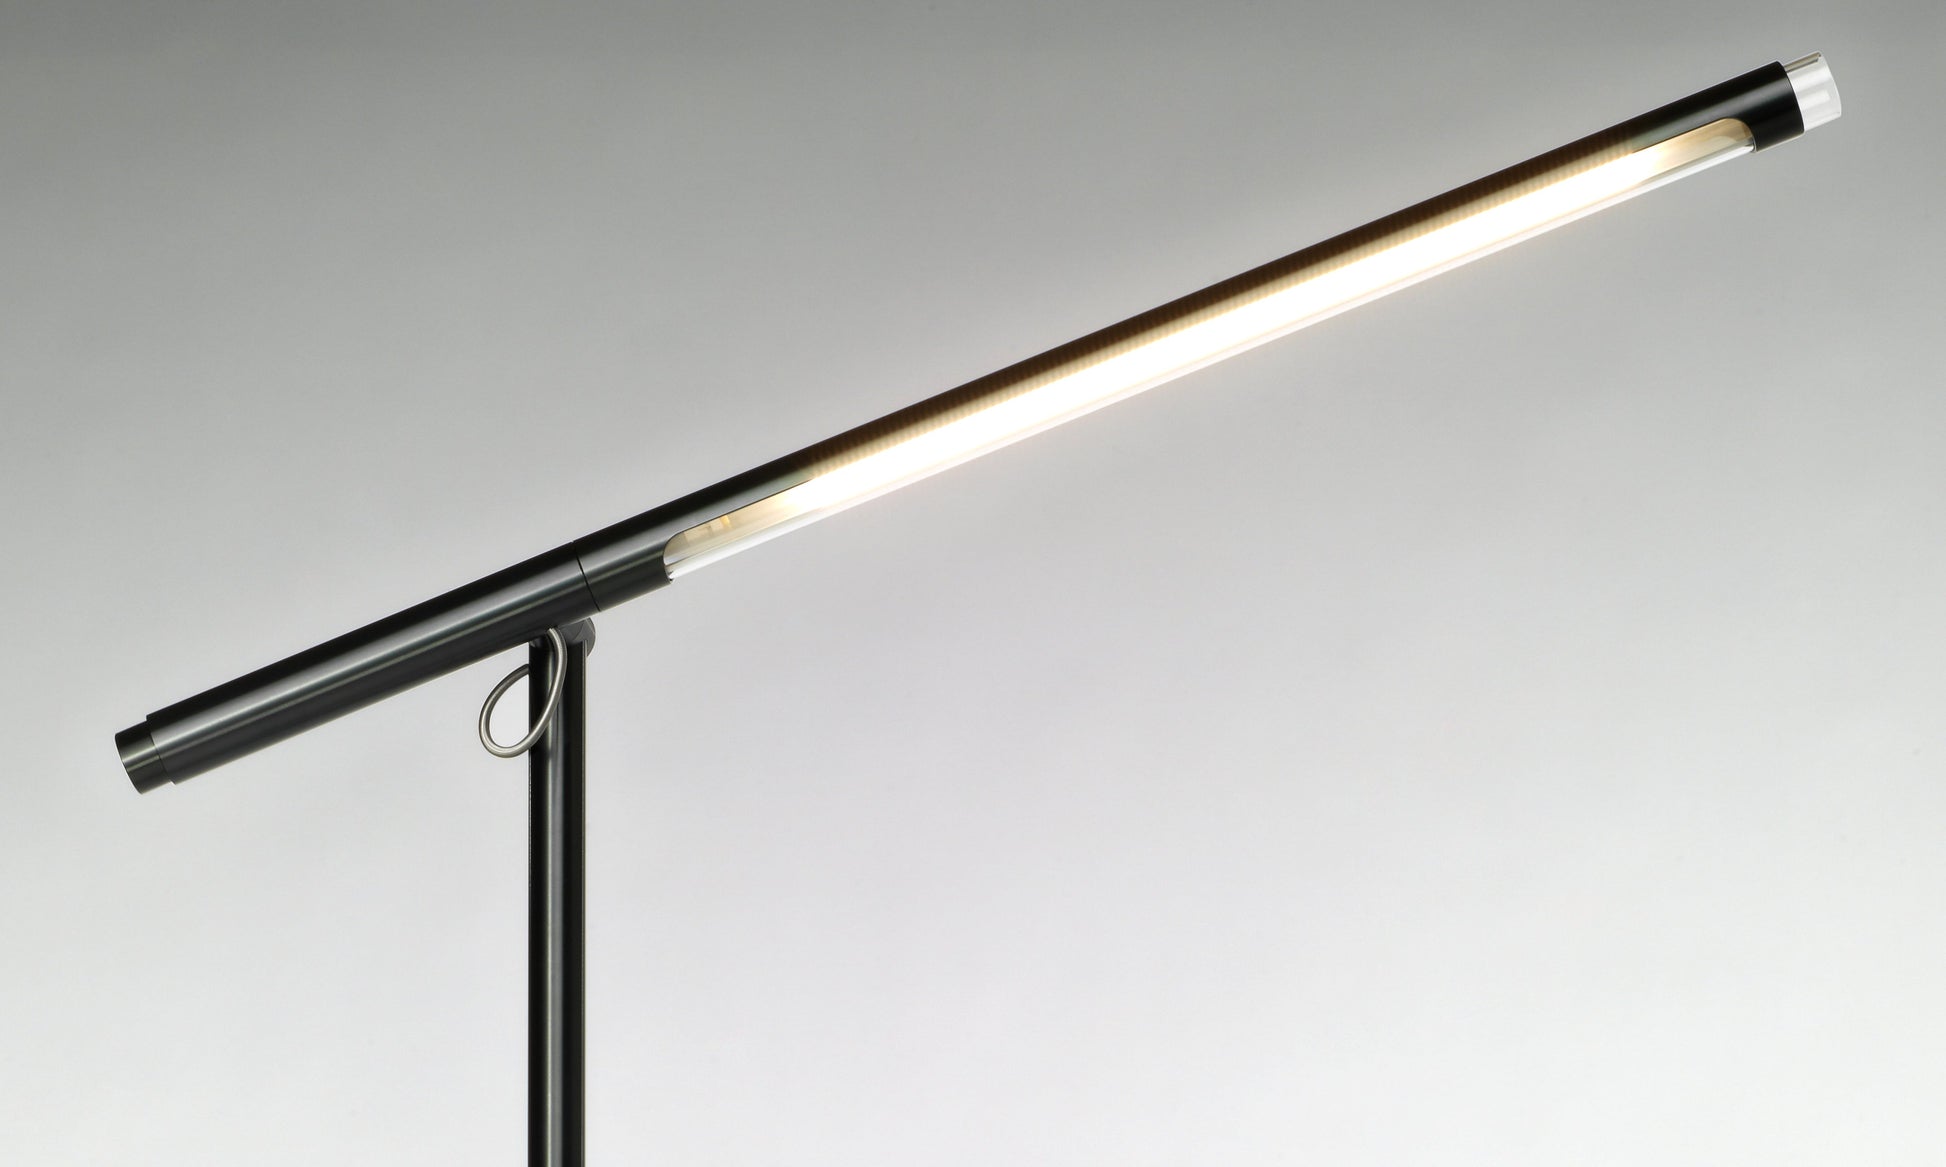 Pablo Designs Brazo Table Lamp